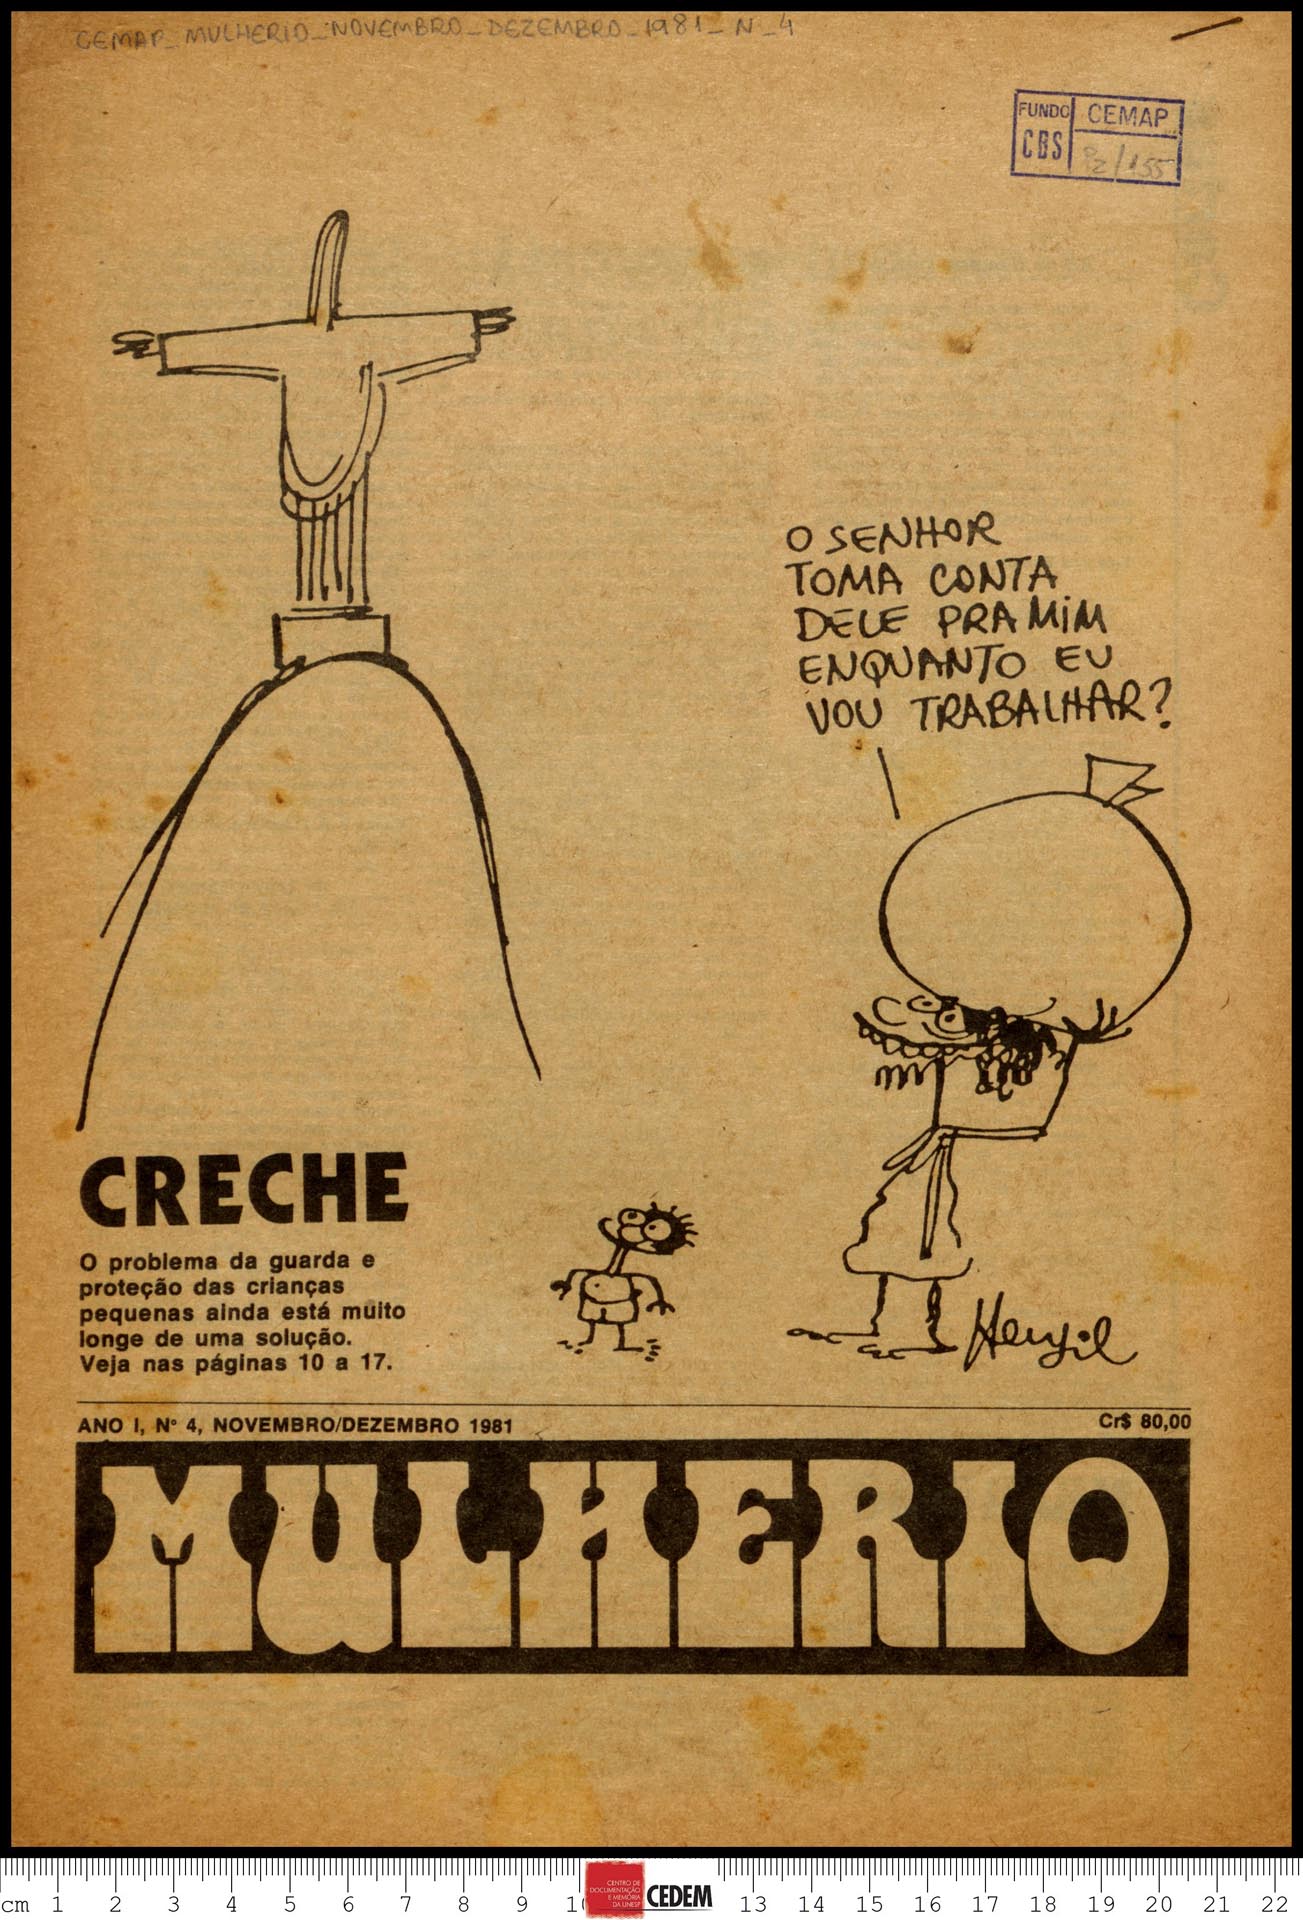 Mulherio - 4 - nov. dez. 1981